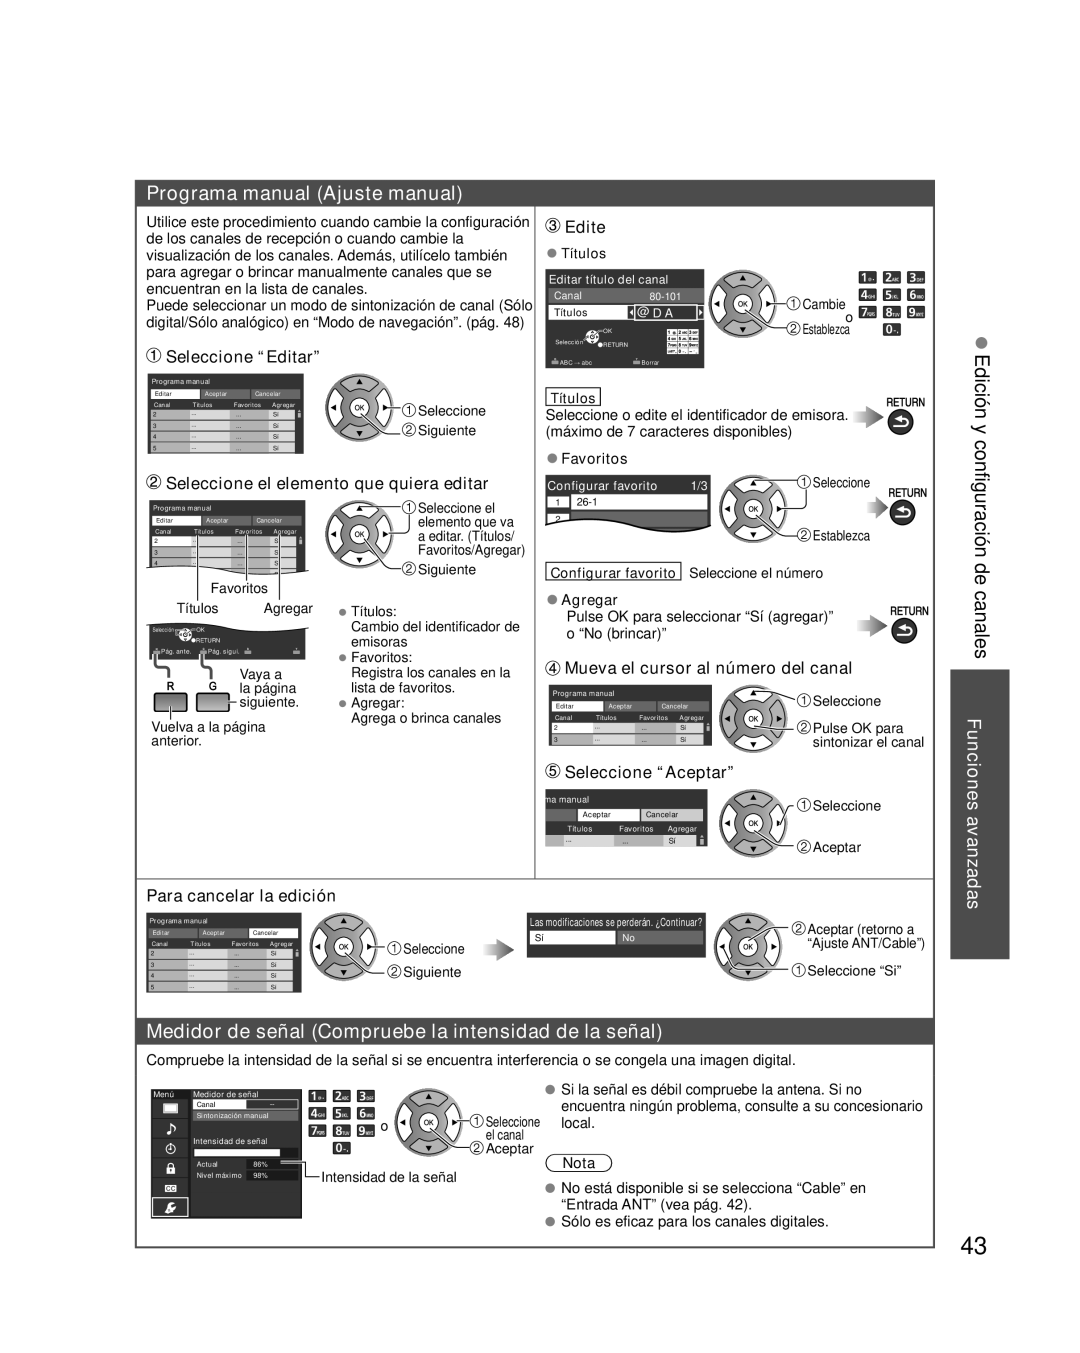 Panasonic TC-L32E3 Programa manual Ajuste manual, Edición y, Medidor de señal Compruebe la intensidad de la señal, Edite 